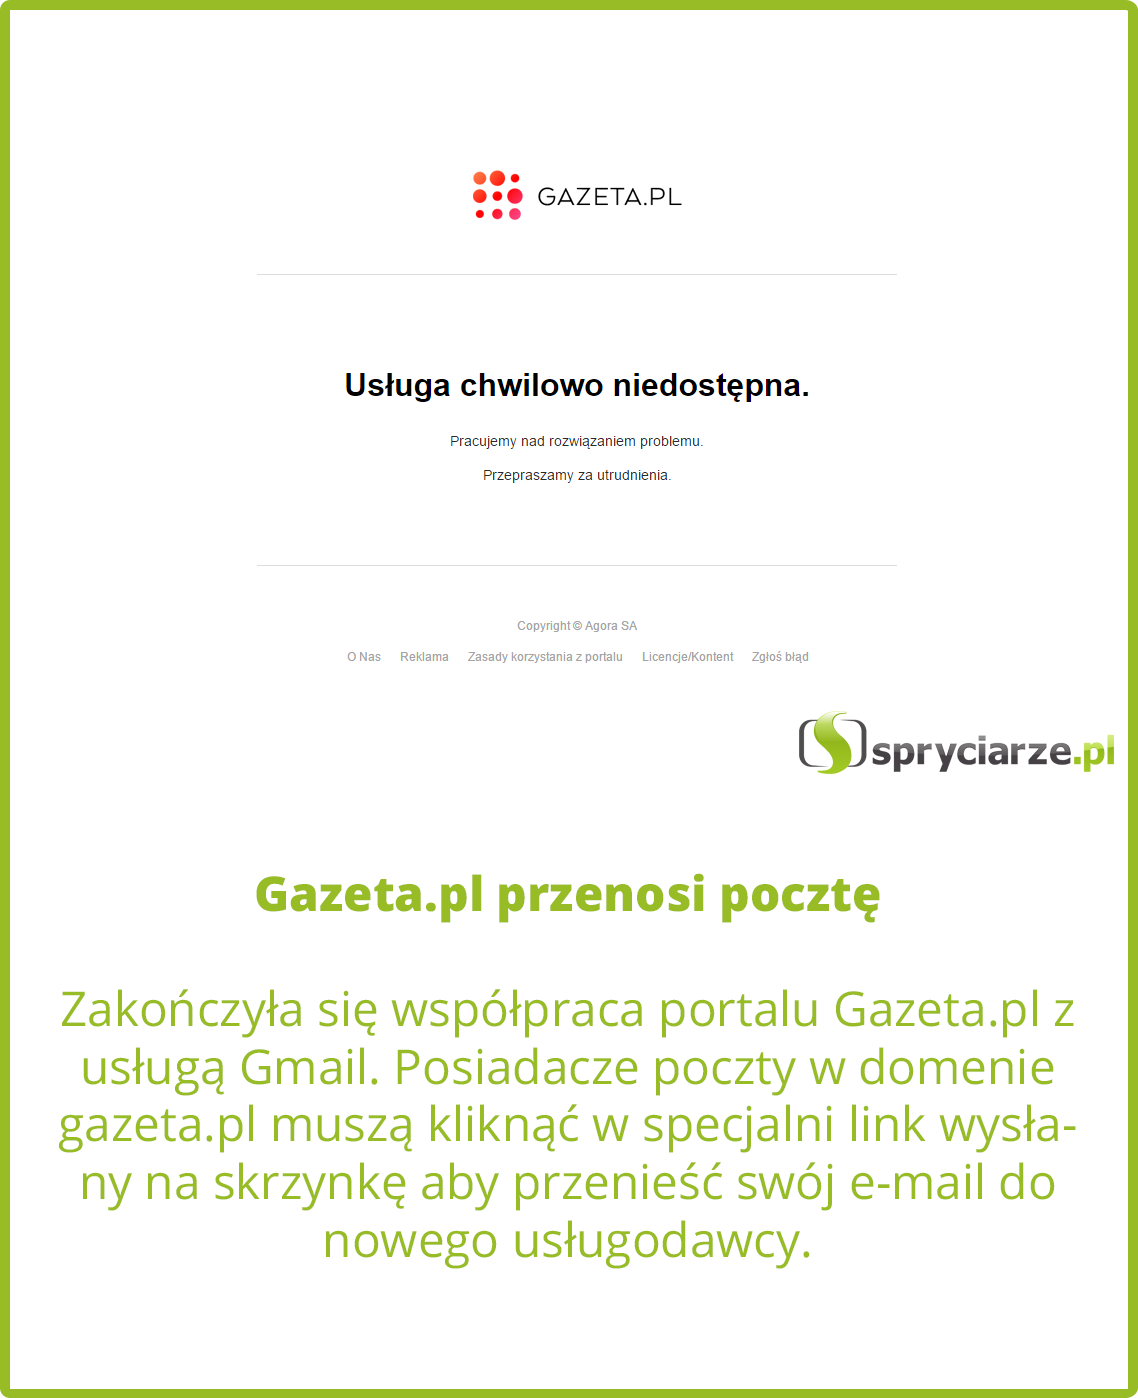 Gazeta.pl przenosi pocztę